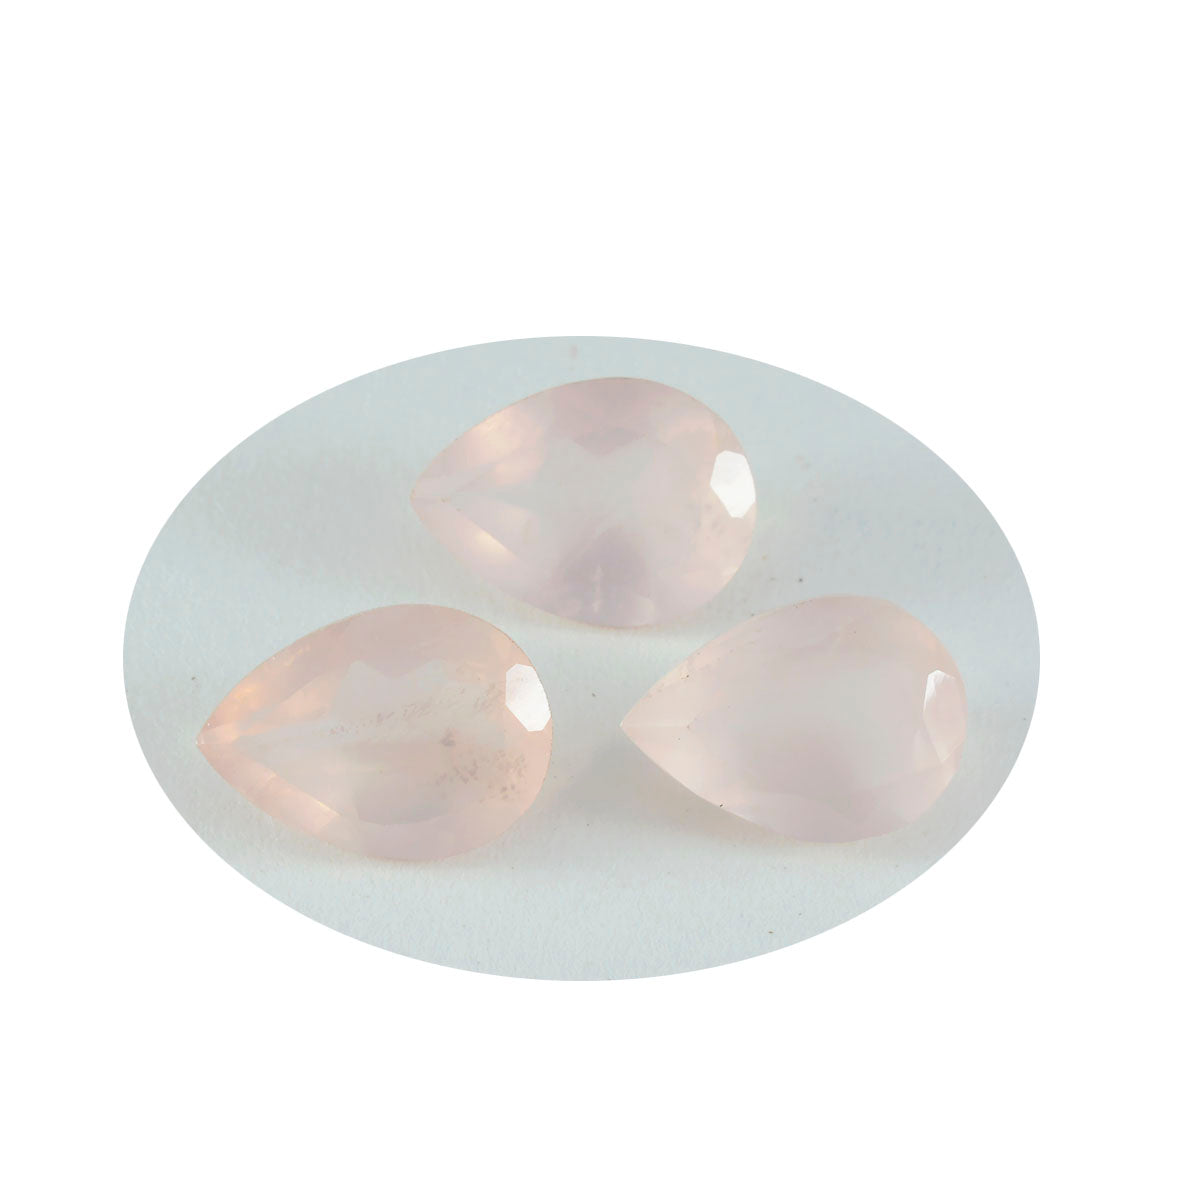 riyogems 1 шт. розовый кварц граненый 10x14 мм грушевидная форма милый качественный свободный камень